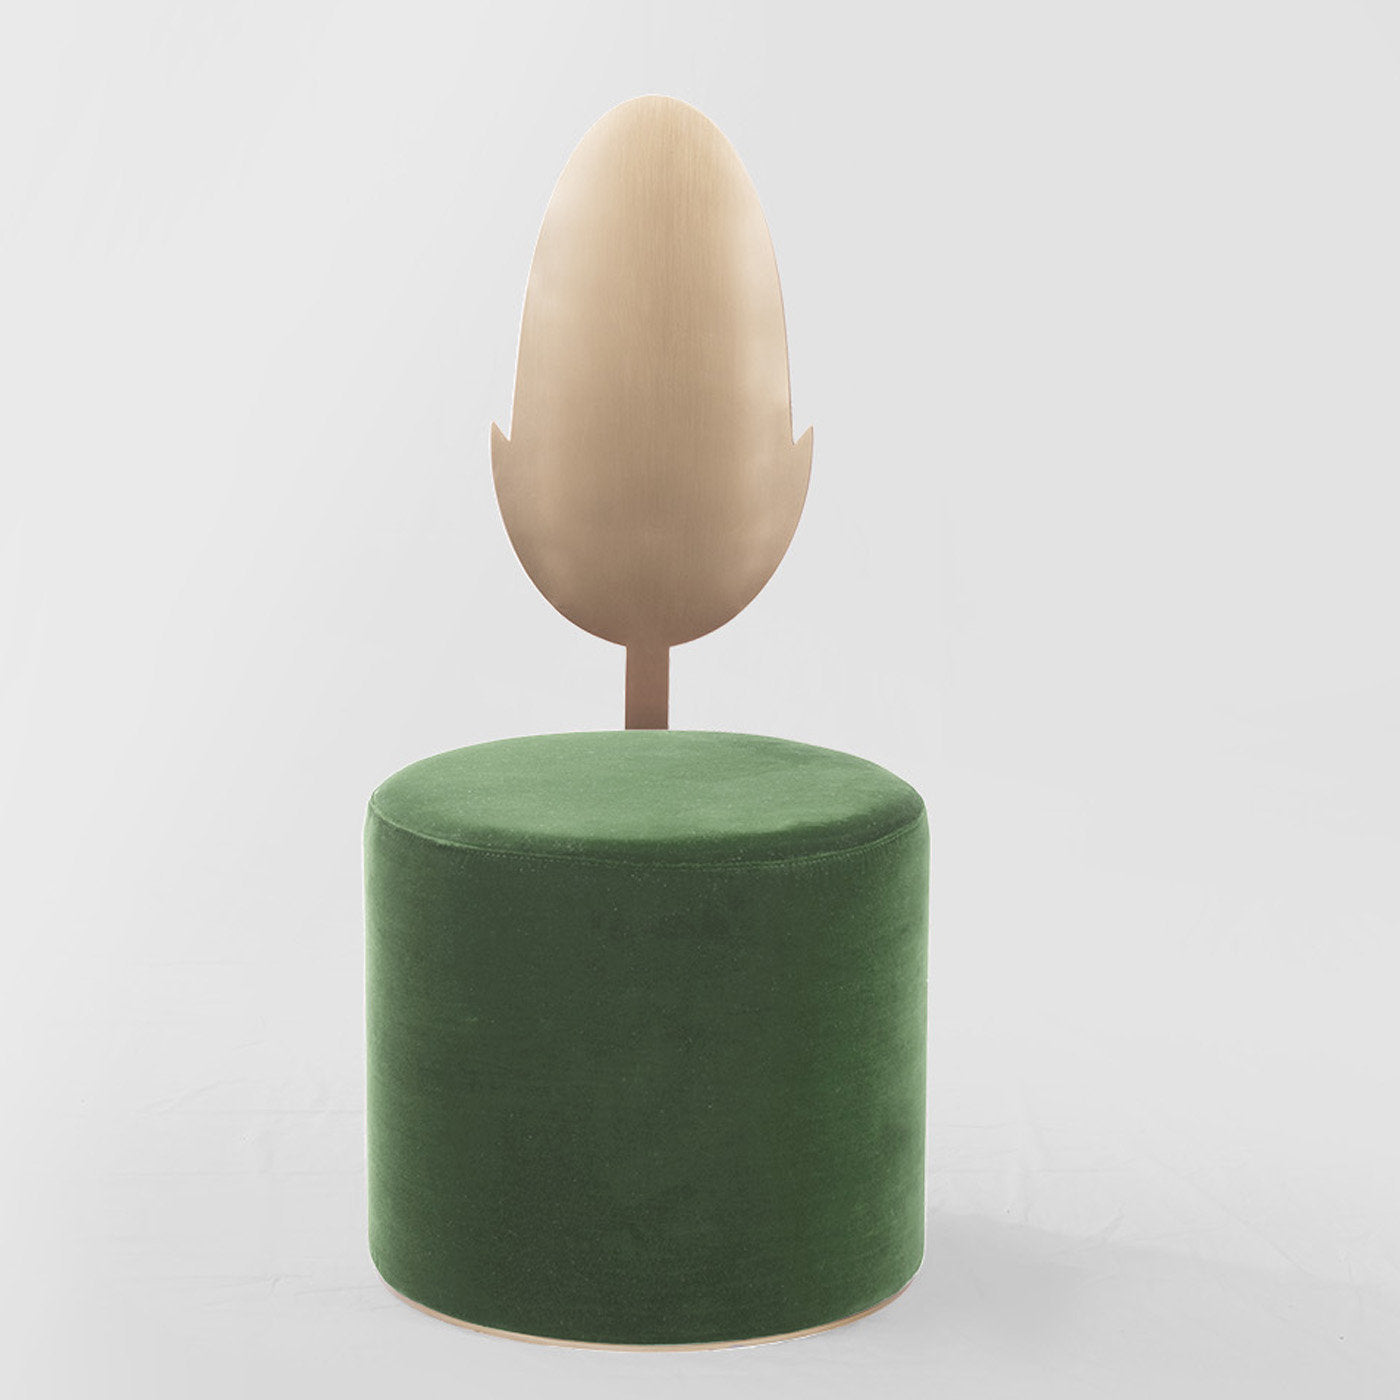 Jasmine Green Pouf by Artefatto Design Studio - Alternative view 1